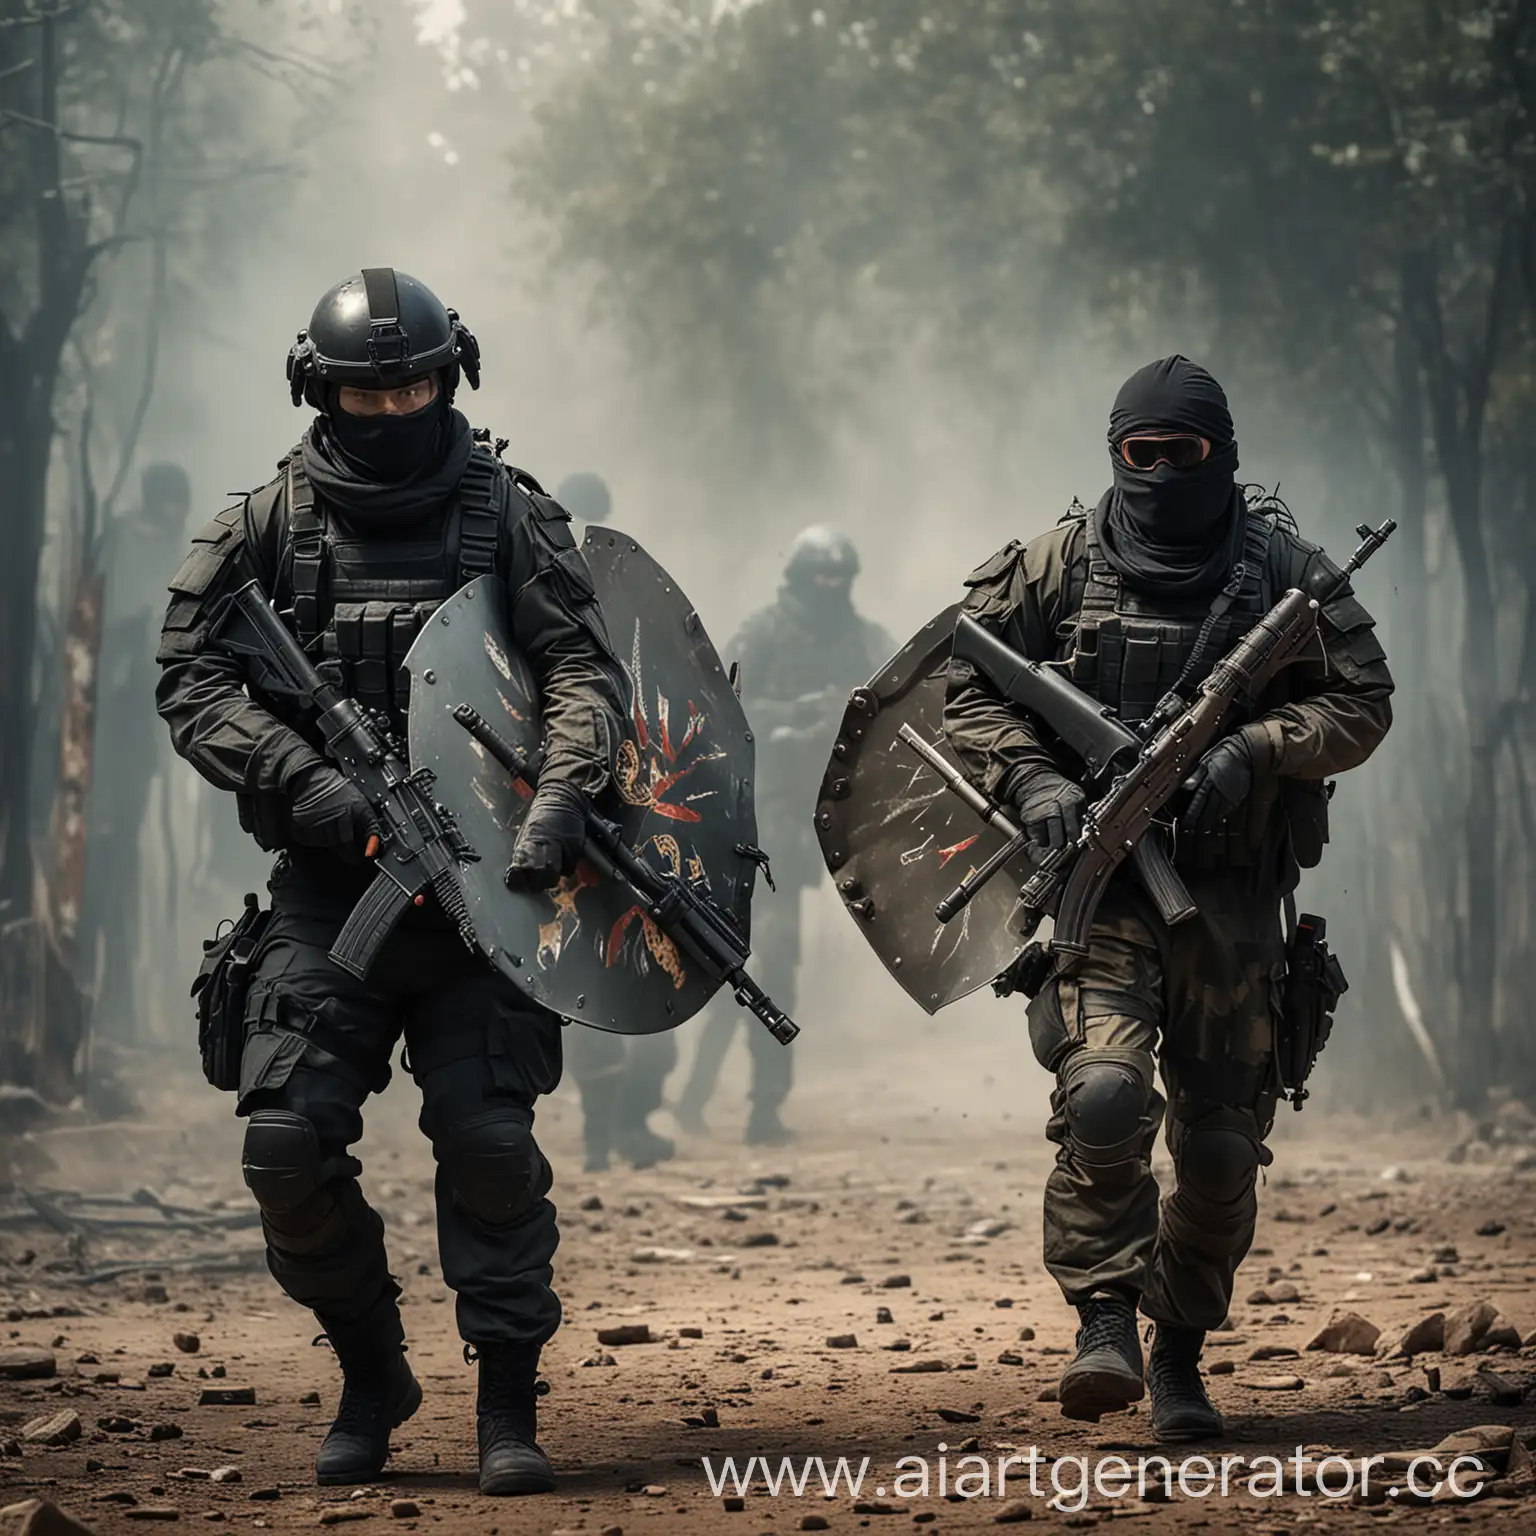 Спецоперация: Щит и Тен террористы против спецназовцев
